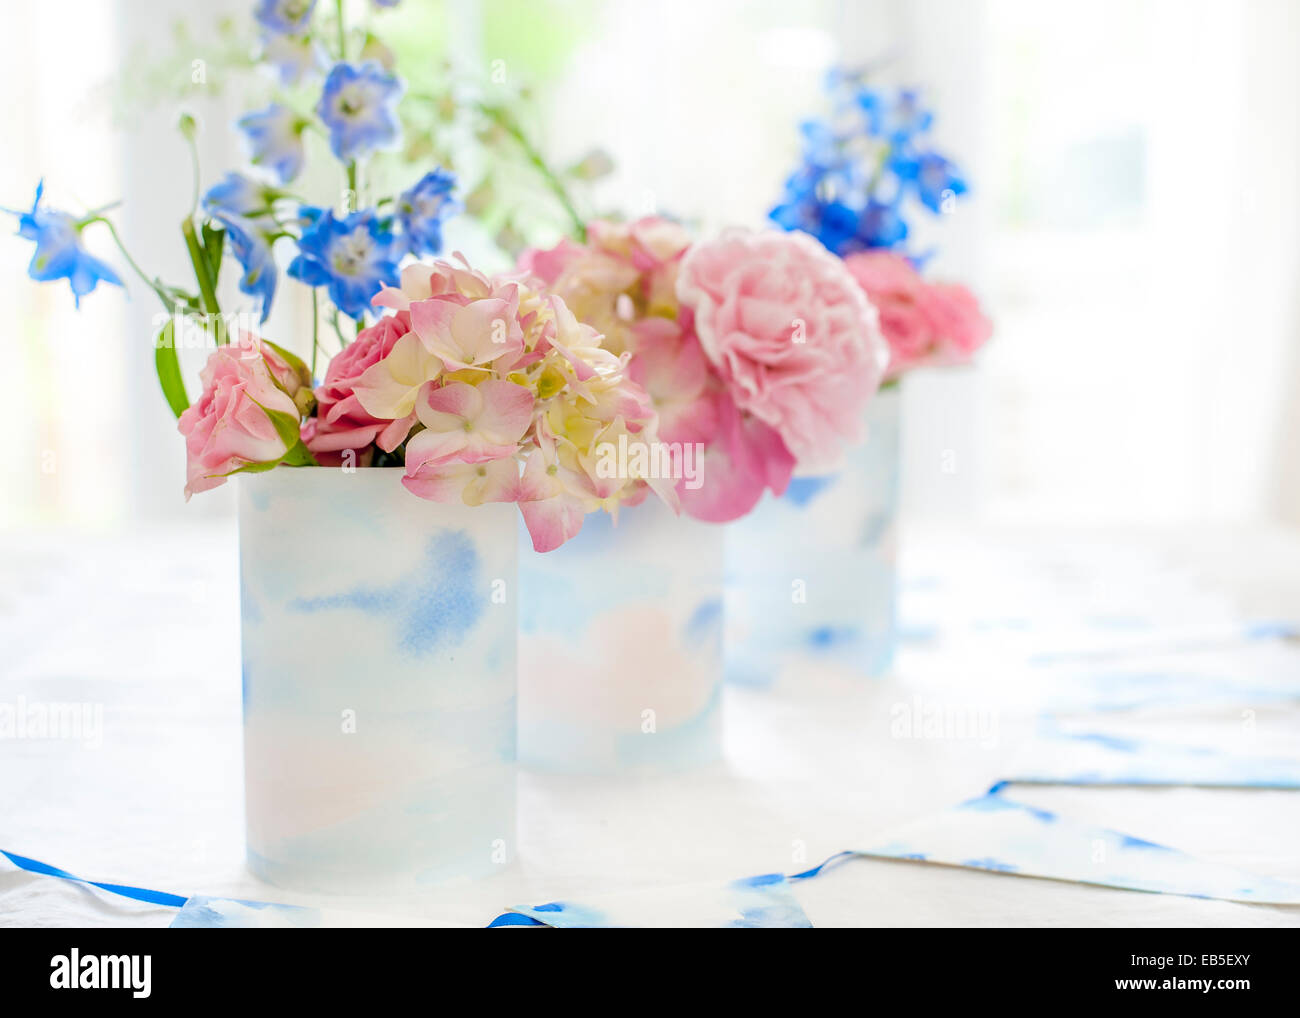 Delphinium azul, rosa rosas, hortensias, clavel en latas decoradas con papel de acuarela pintada de color blanco y azul y bunting Foto de stock